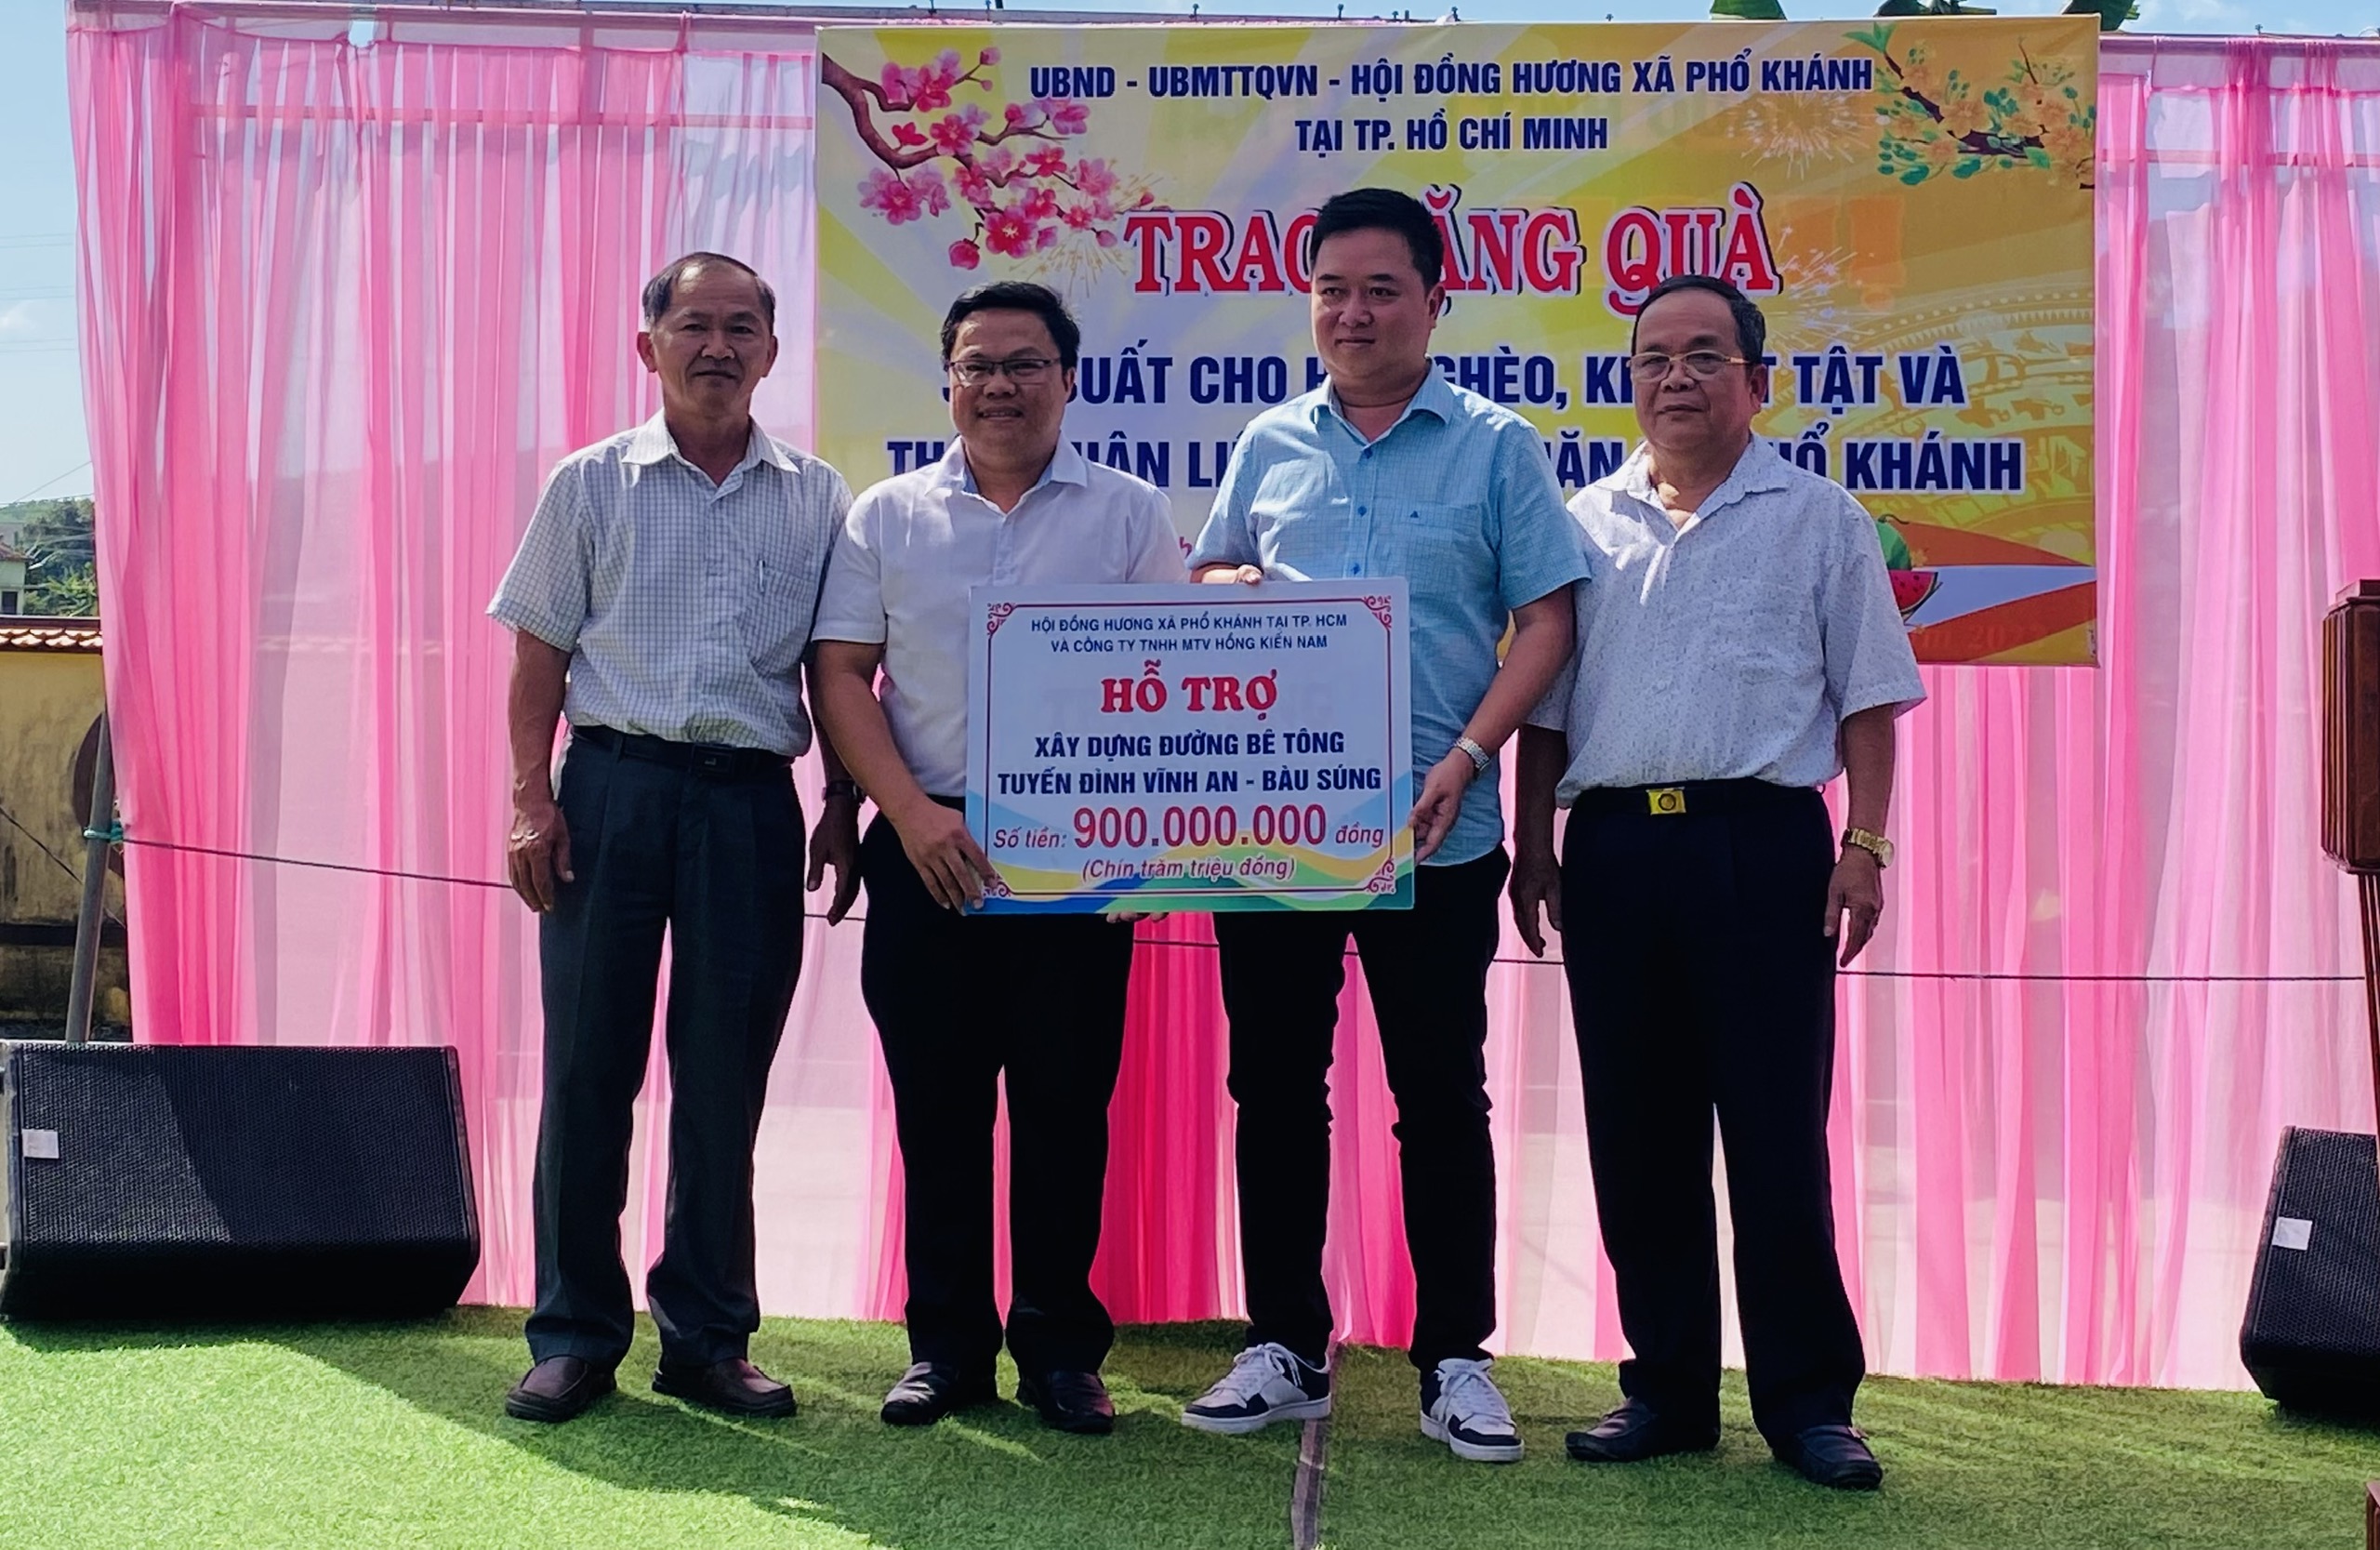 Hội đồng hương Phổ Khánh tại Thành phố Hồ Chí Minh tặng 310 phần quà tết cho các hộ nghèo, khuyết tật và thân nhân liệt sỹ khó khăn xã Phổ Khánh.